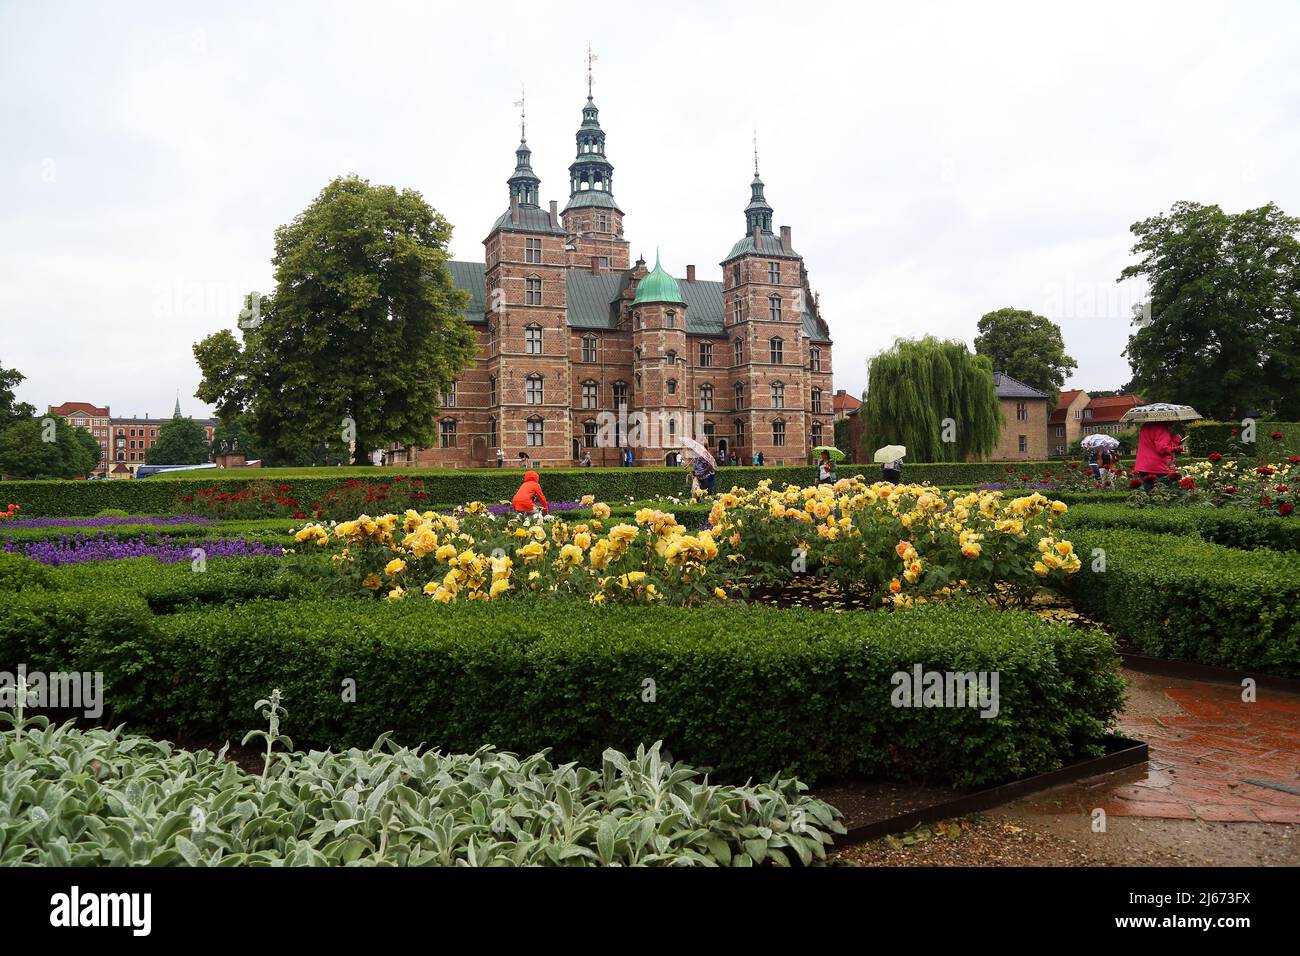 COPENHAGUE, DANEMARK - 29 JUIN 2016 : c'est le château de Rosenborg et la roseraie du château. Banque D'Images